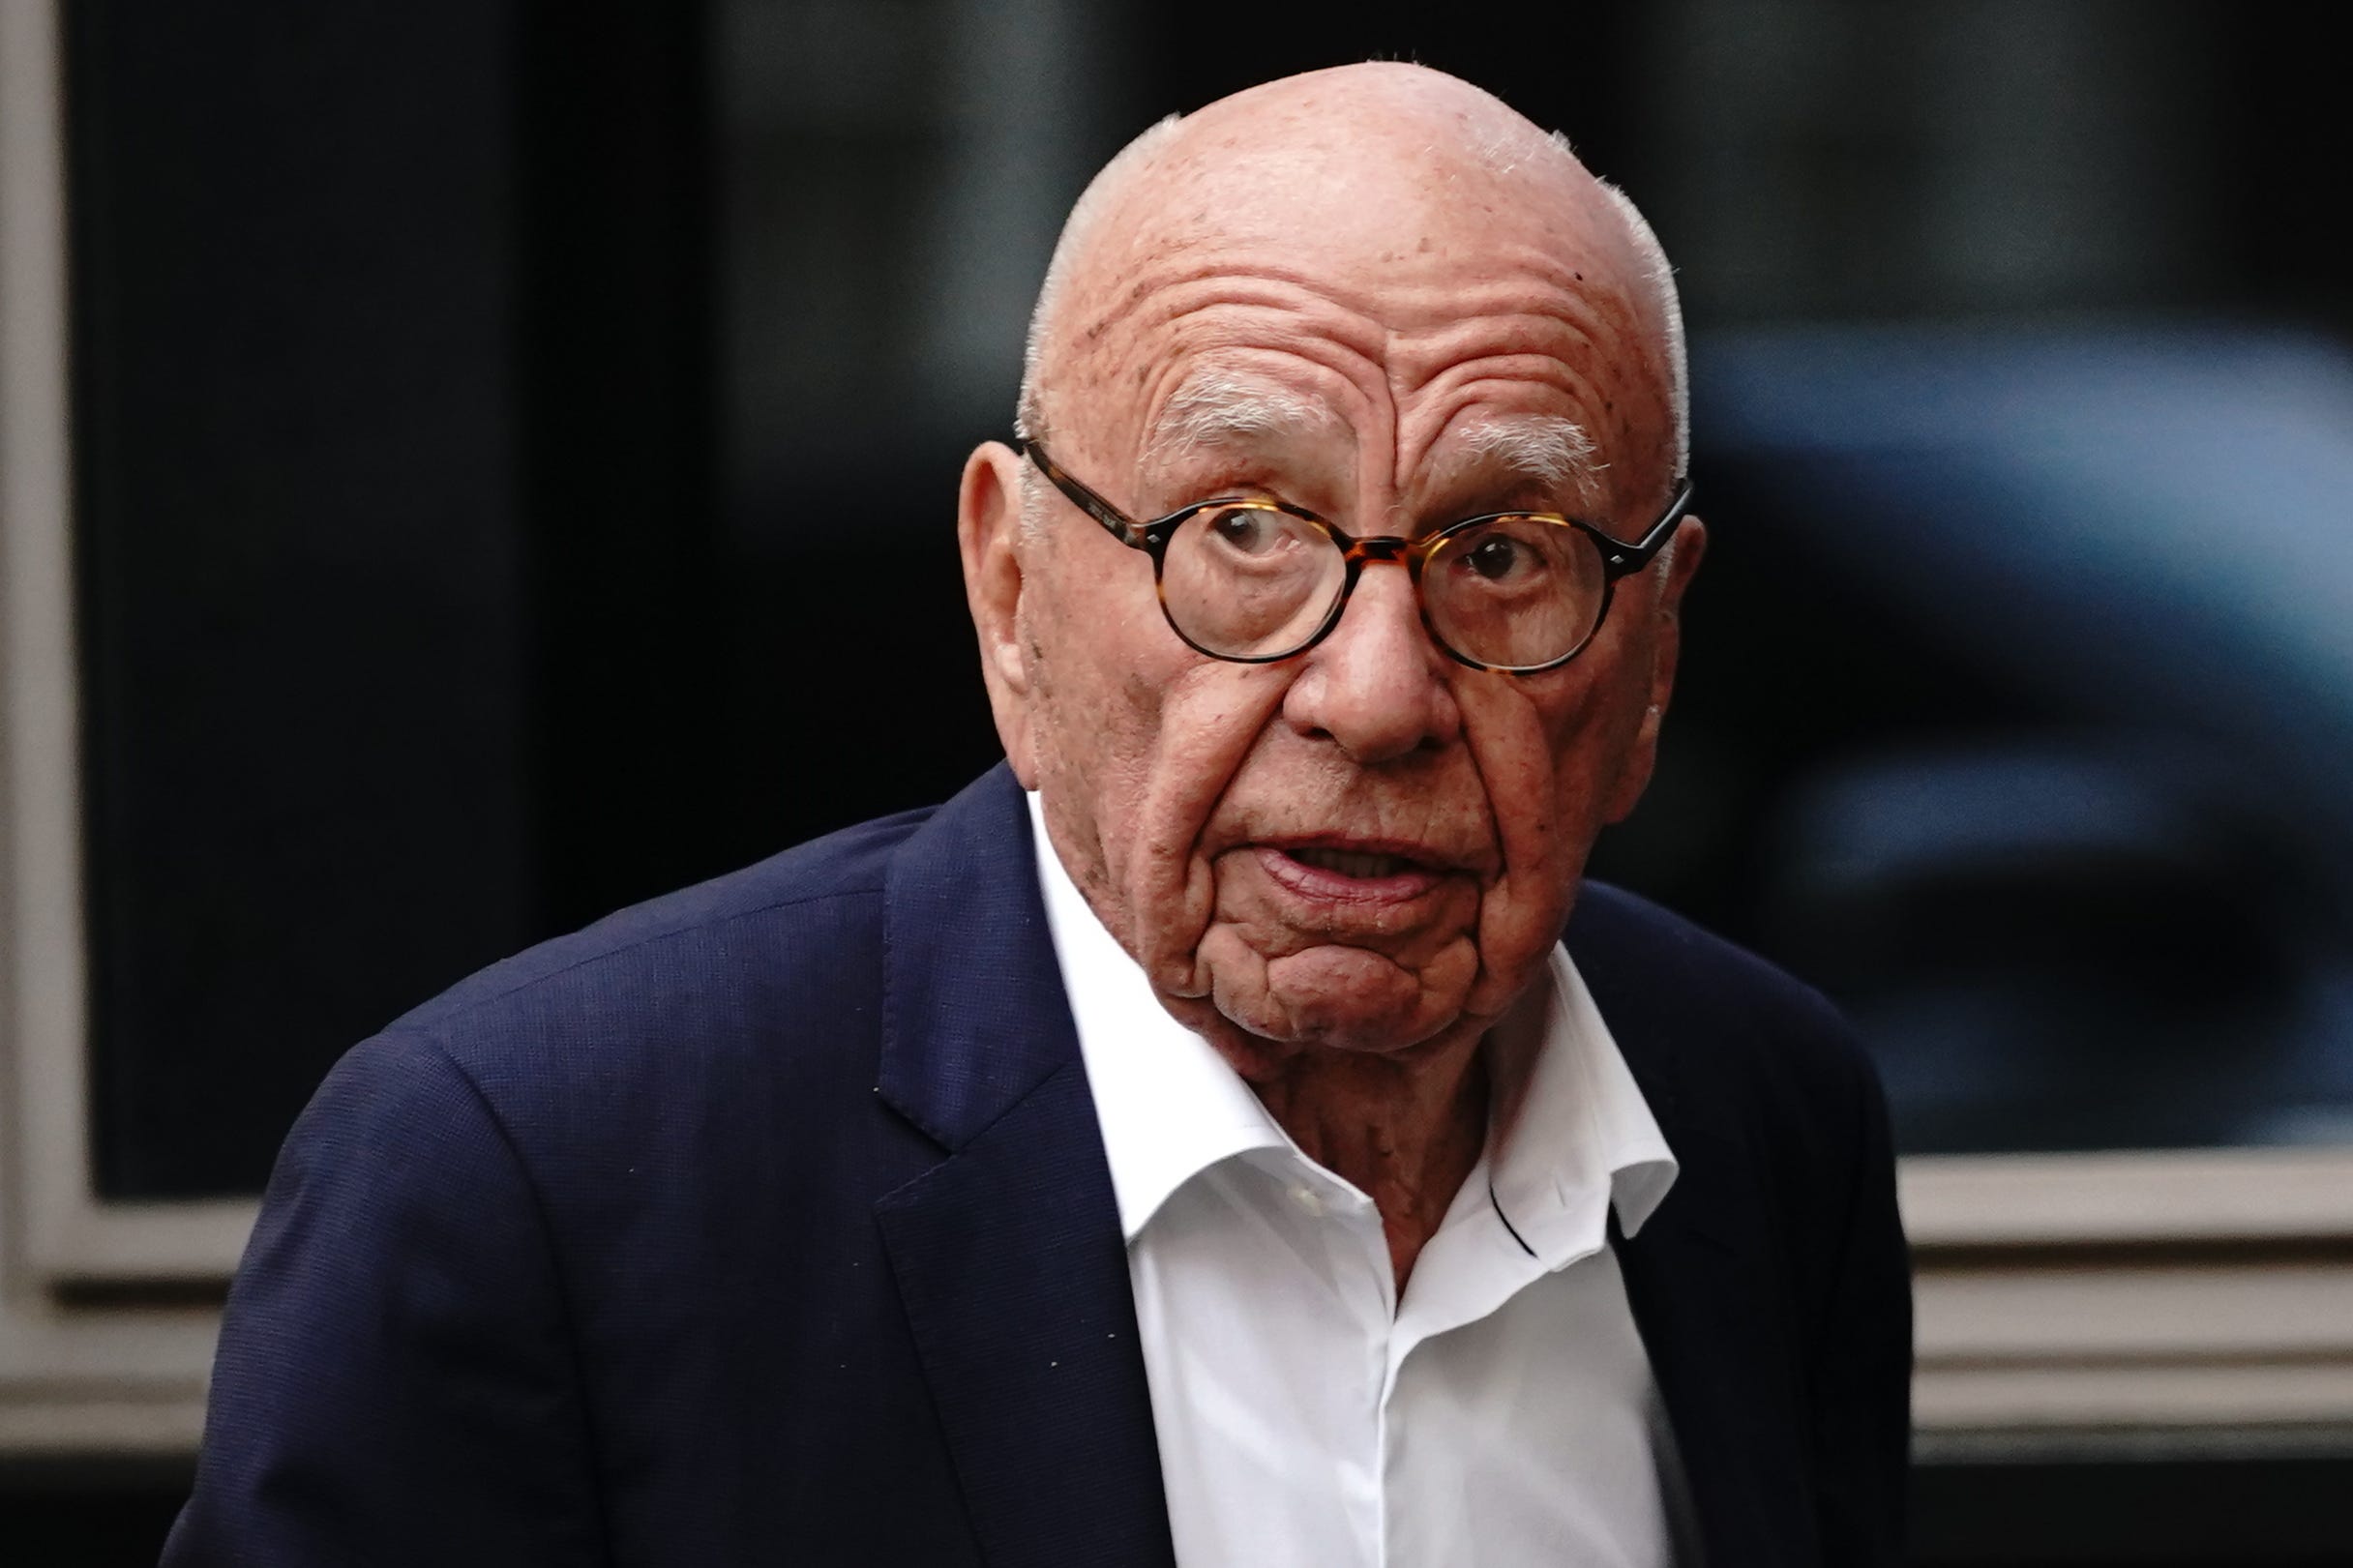 Rupert Murdoch was previously a director of News International, now News UK